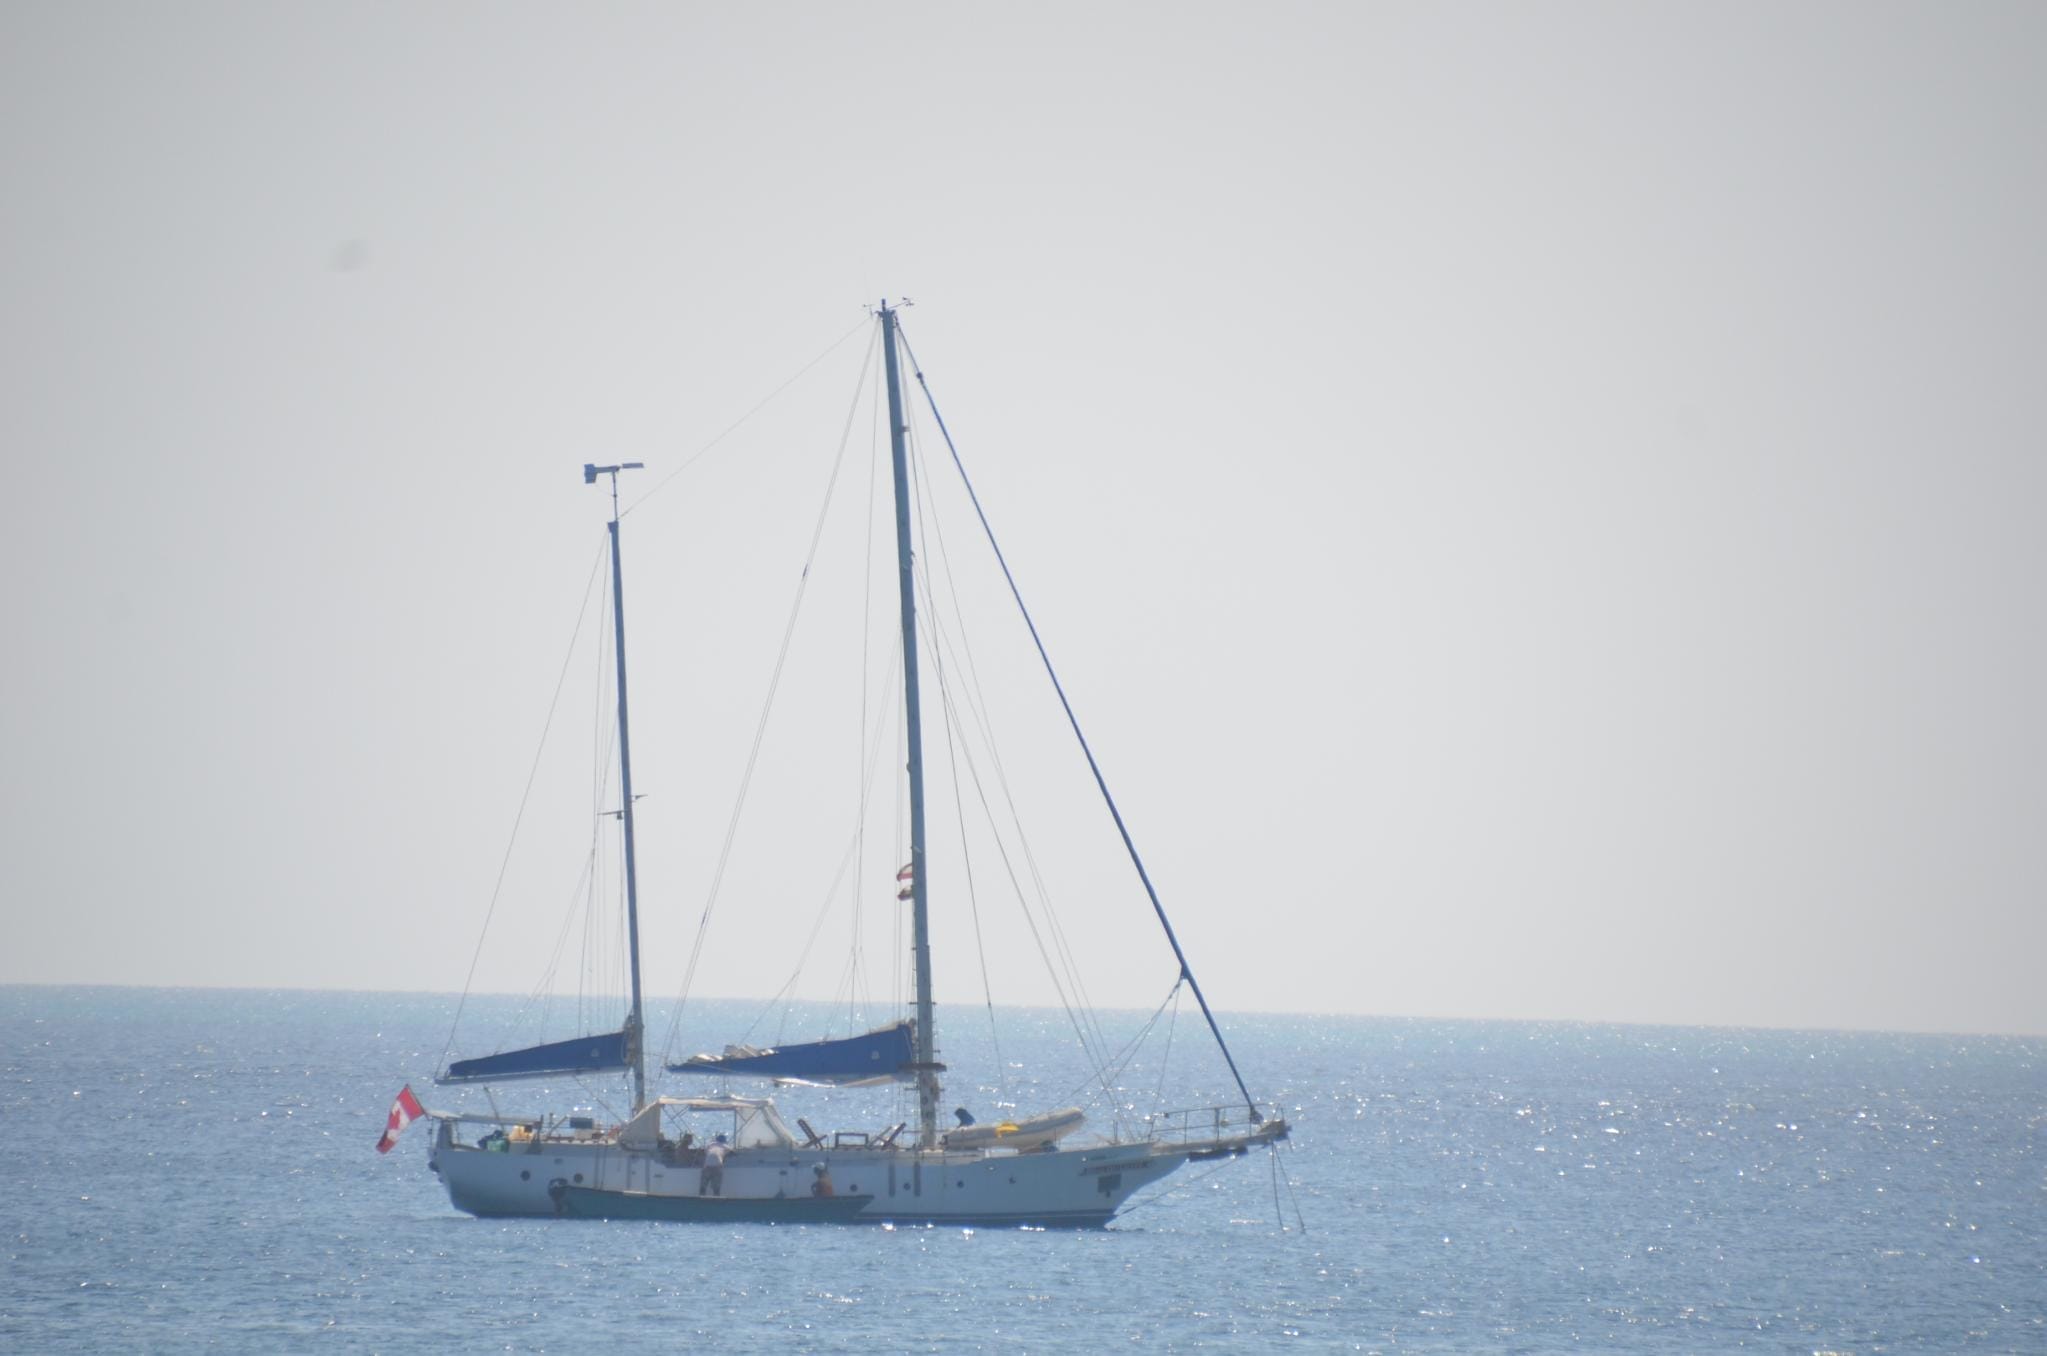 Private sailboat near Rosario Islands